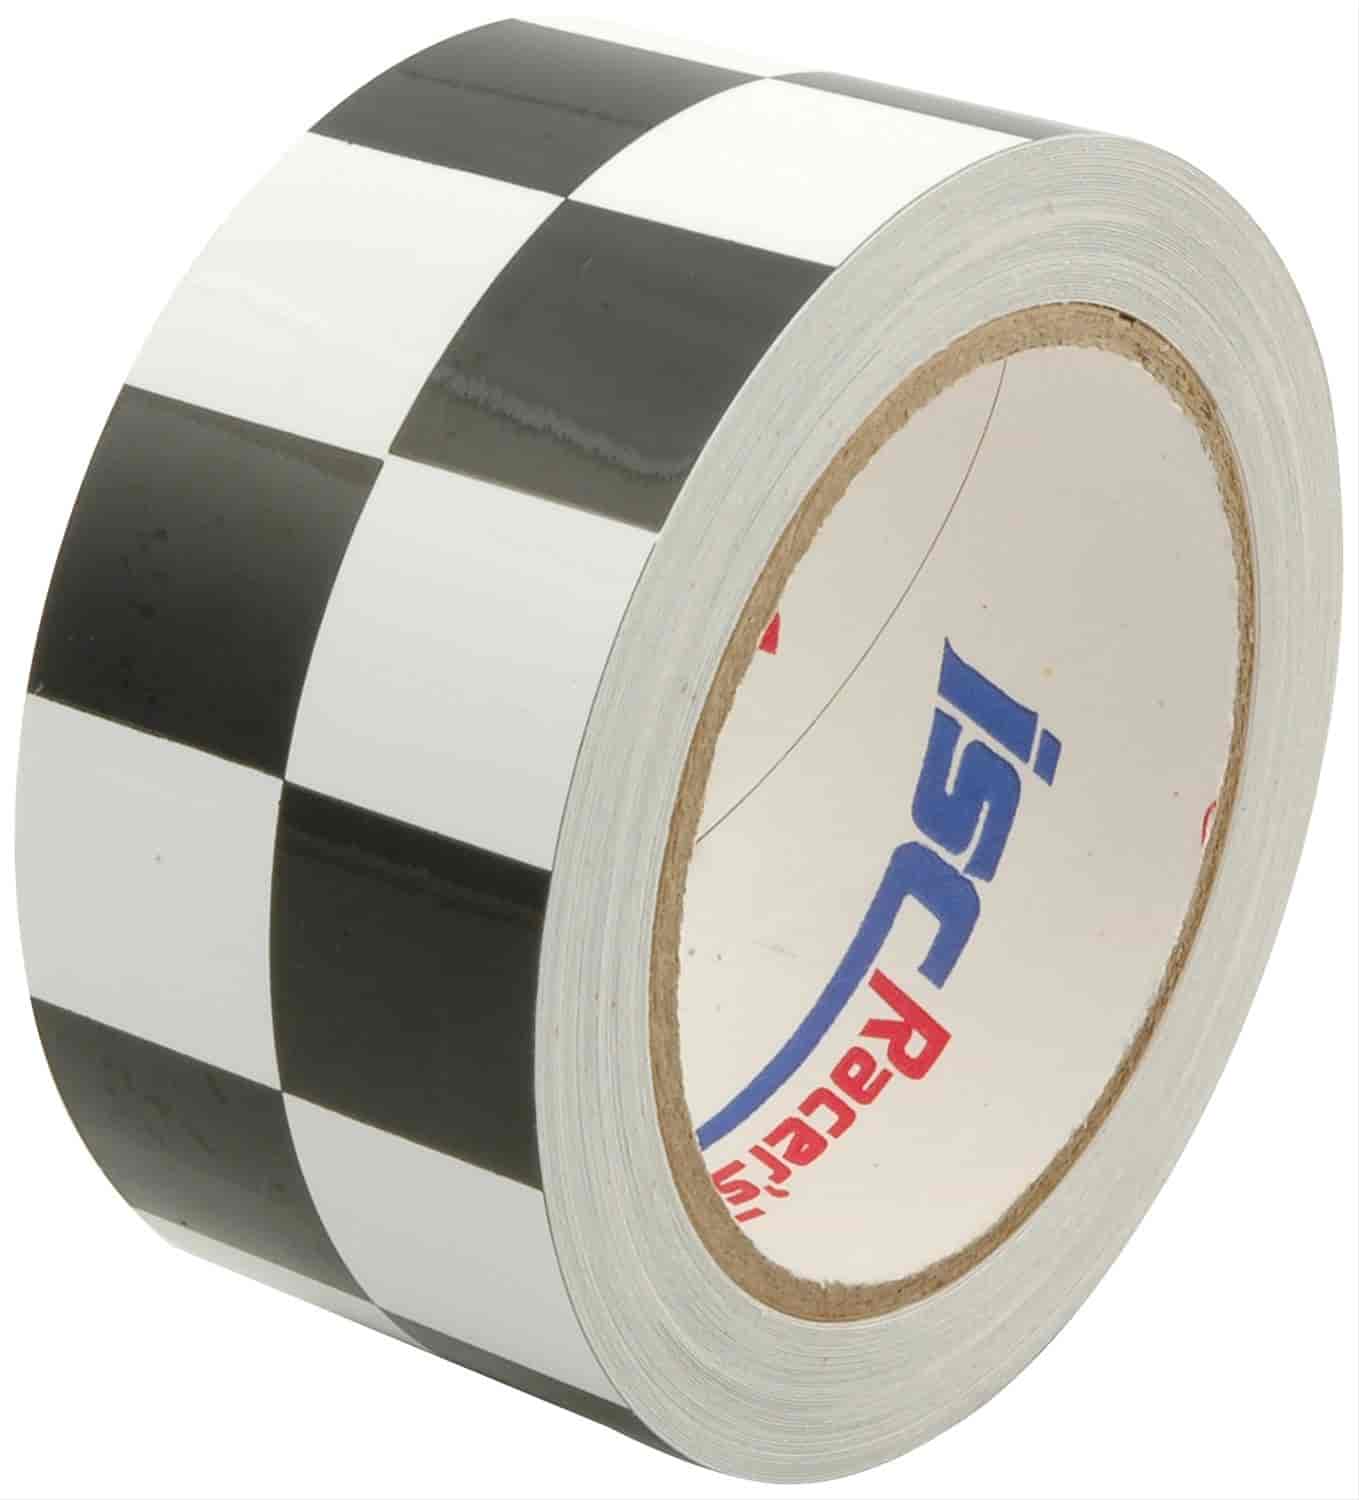 2" x 45" Racer"s Tape Black & White Checkered